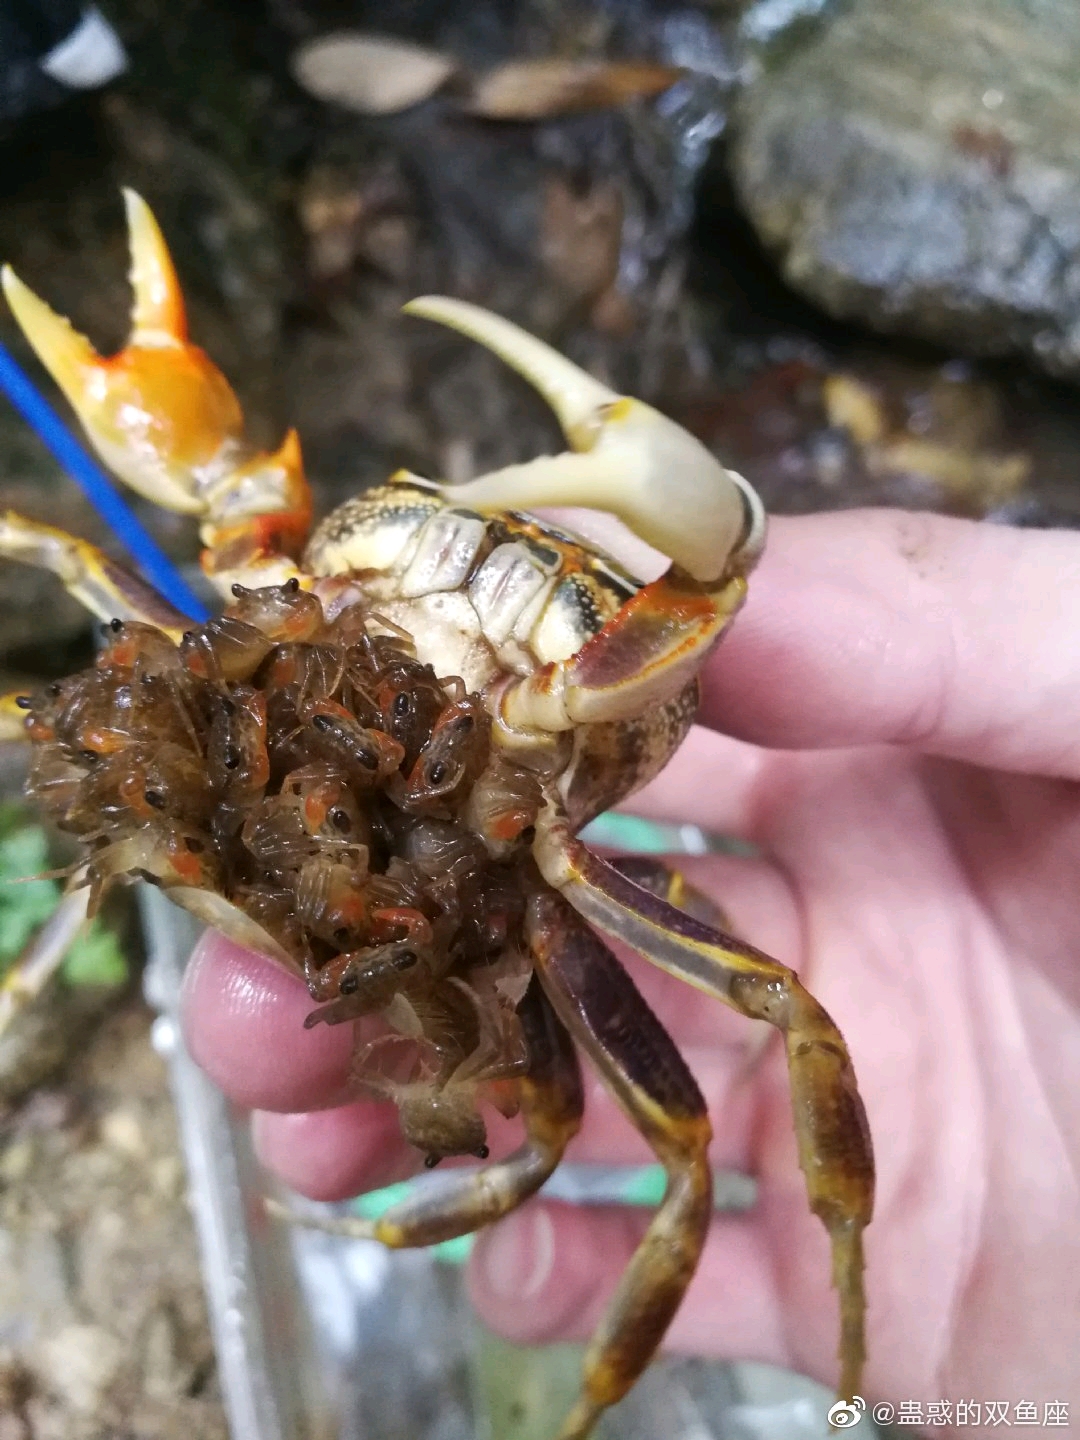 生活 日常 螃蟹的基本饲养条件 第一期    且由于卵体较大,一次所携带